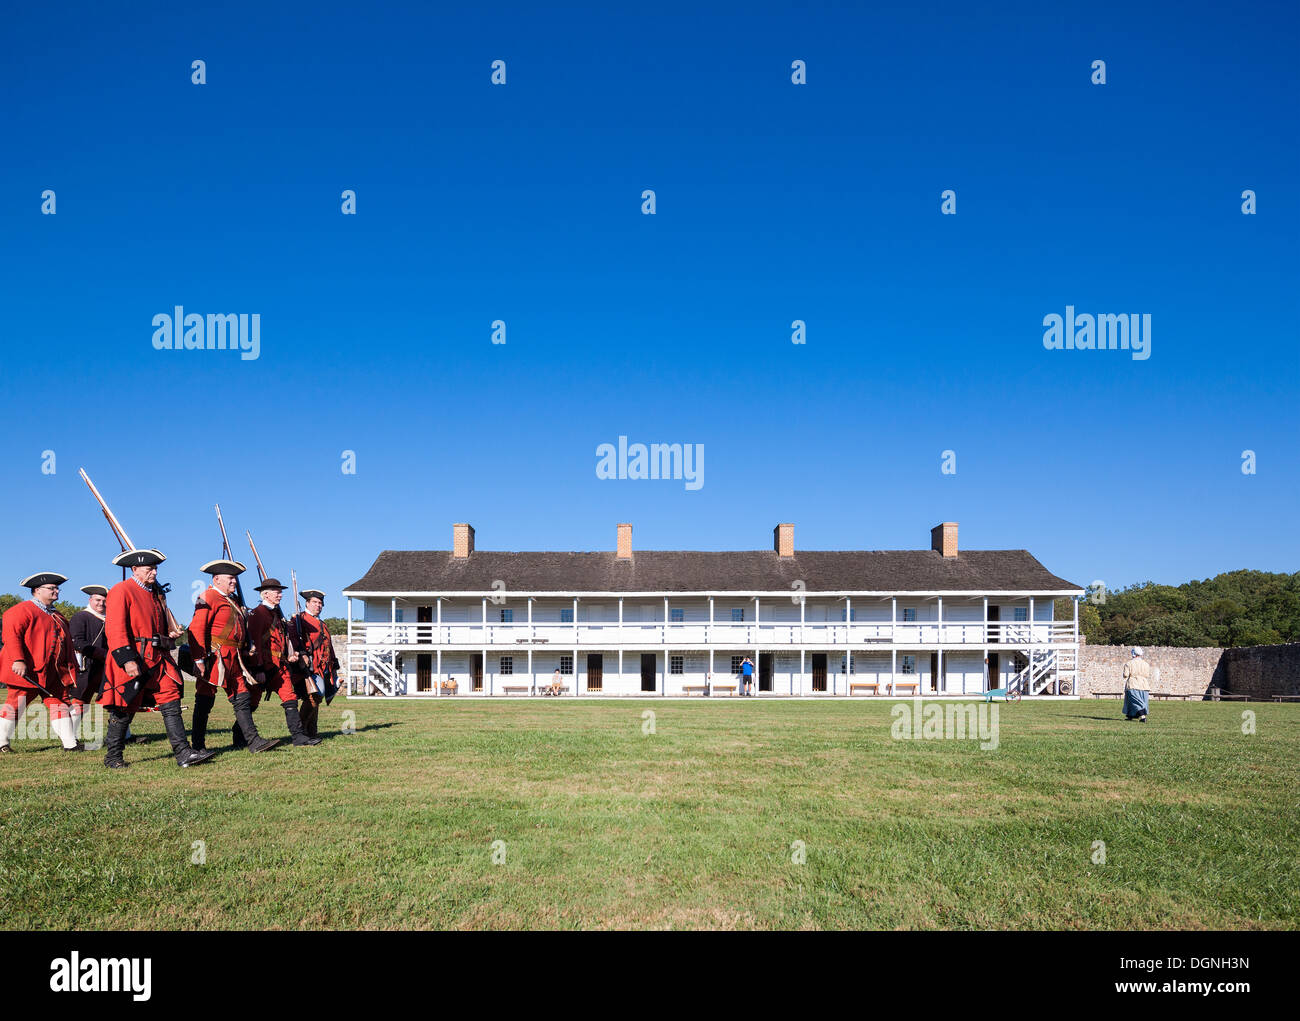 Vida diaria histórica del siglo XVIII en Fort Frederick, Maryland. Los voluntarios de marzo con uniformes de la época y mosquetes. Este cuartel. Foto de stock